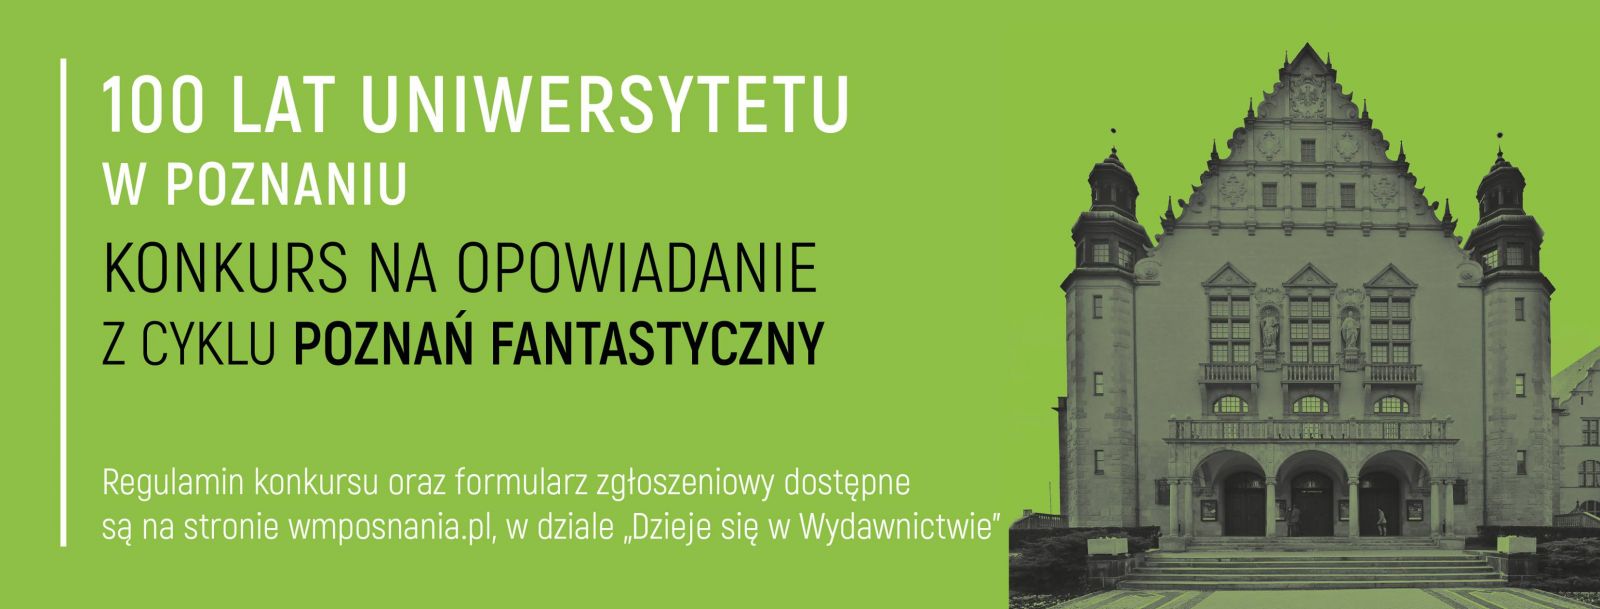 Poznań fantastyczny